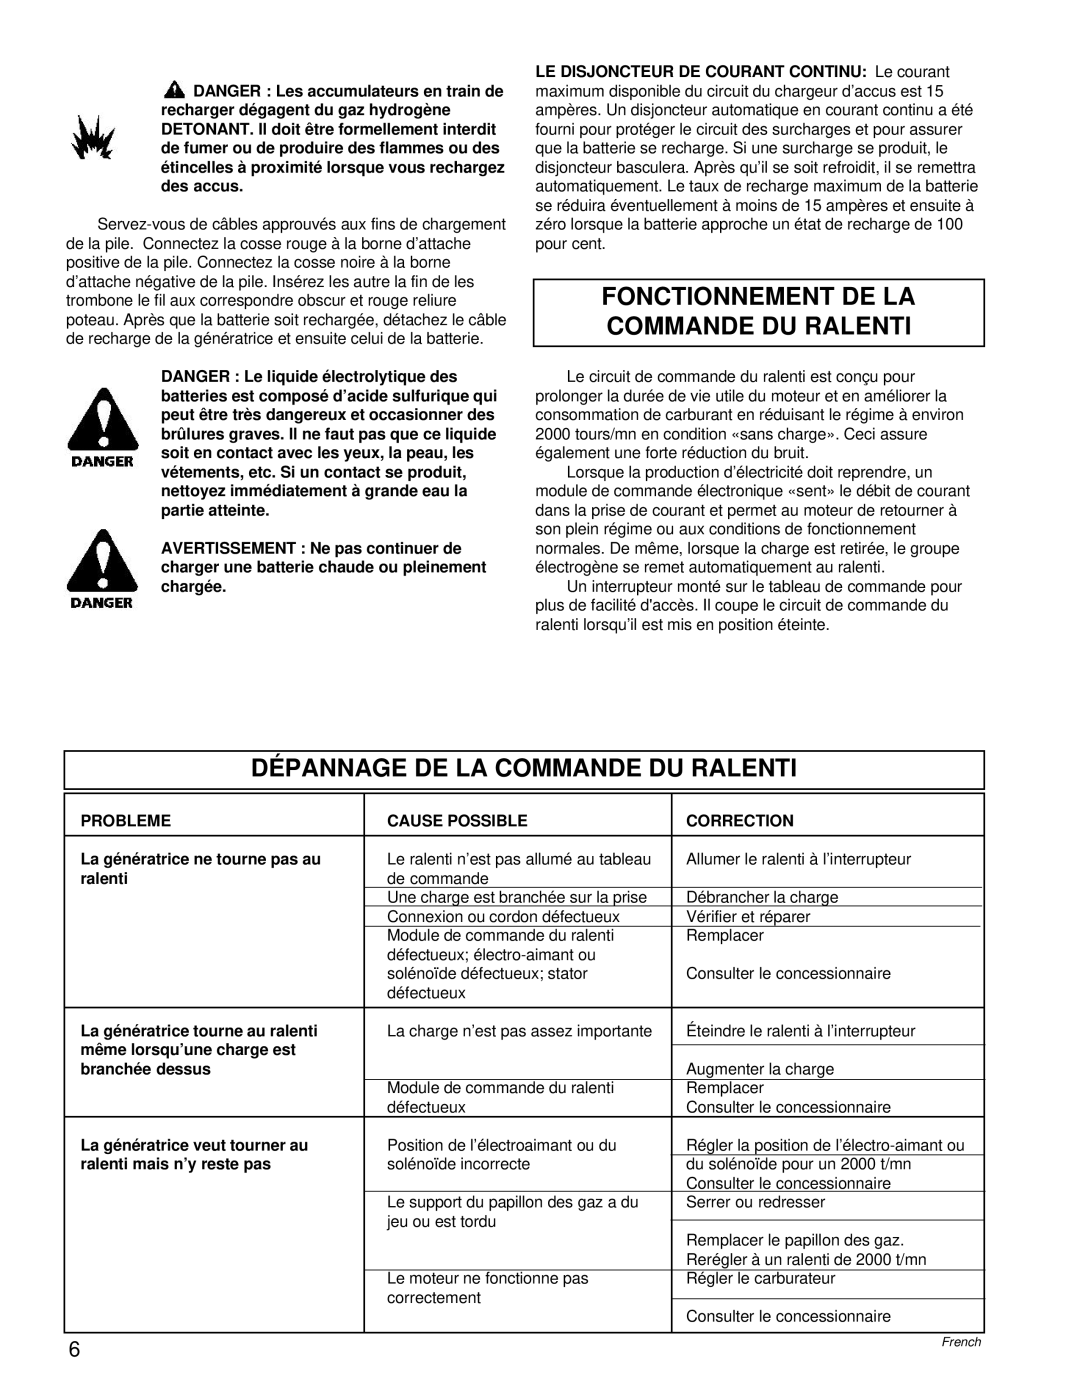 Powermate PM0496504.17 manual Fonctionnement De La Commande Du Ralenti, Dépannage De La Commande Du Ralenti 